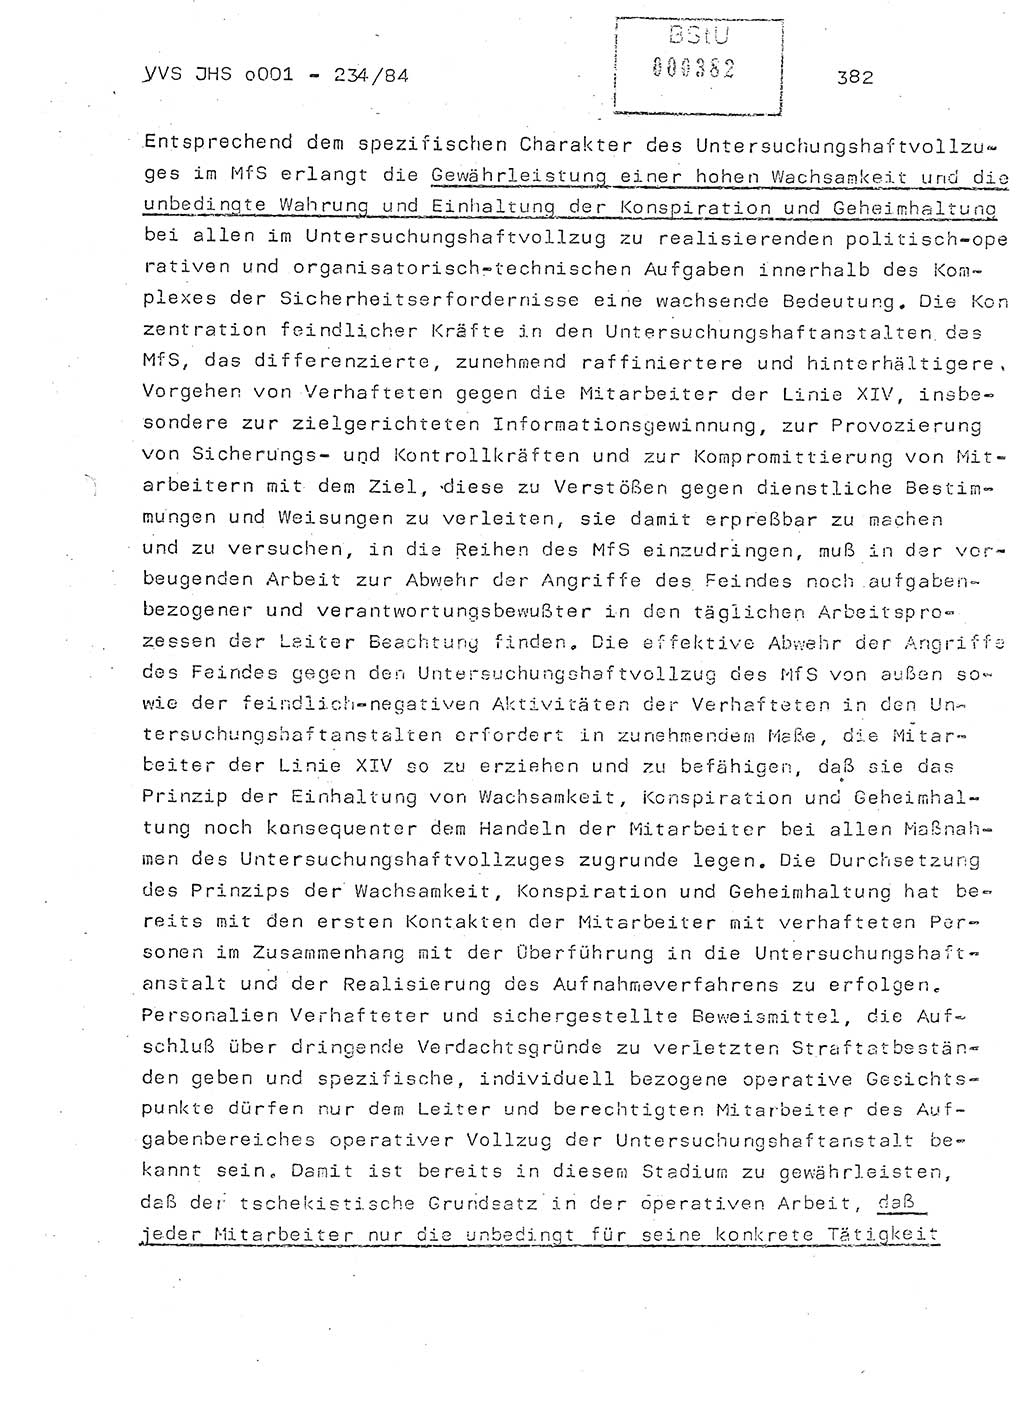 Dissertation Oberst Siegfried Rataizick (Abt. ⅩⅣ), Oberstleutnant Volkmar Heinz (Abt. ⅩⅣ), Oberstleutnant Werner Stein (HA Ⅸ), Hauptmann Heinz Conrad (JHS), Ministerium für Staatssicherheit (MfS) [Deutsche Demokratische Republik (DDR)], Juristische Hochschule (JHS), Vertrauliche Verschlußsache (VVS) o001-234/84, Potsdam 1984, Seite 382 (Diss. MfS DDR JHS VVS o001-234/84 1984, S. 382)